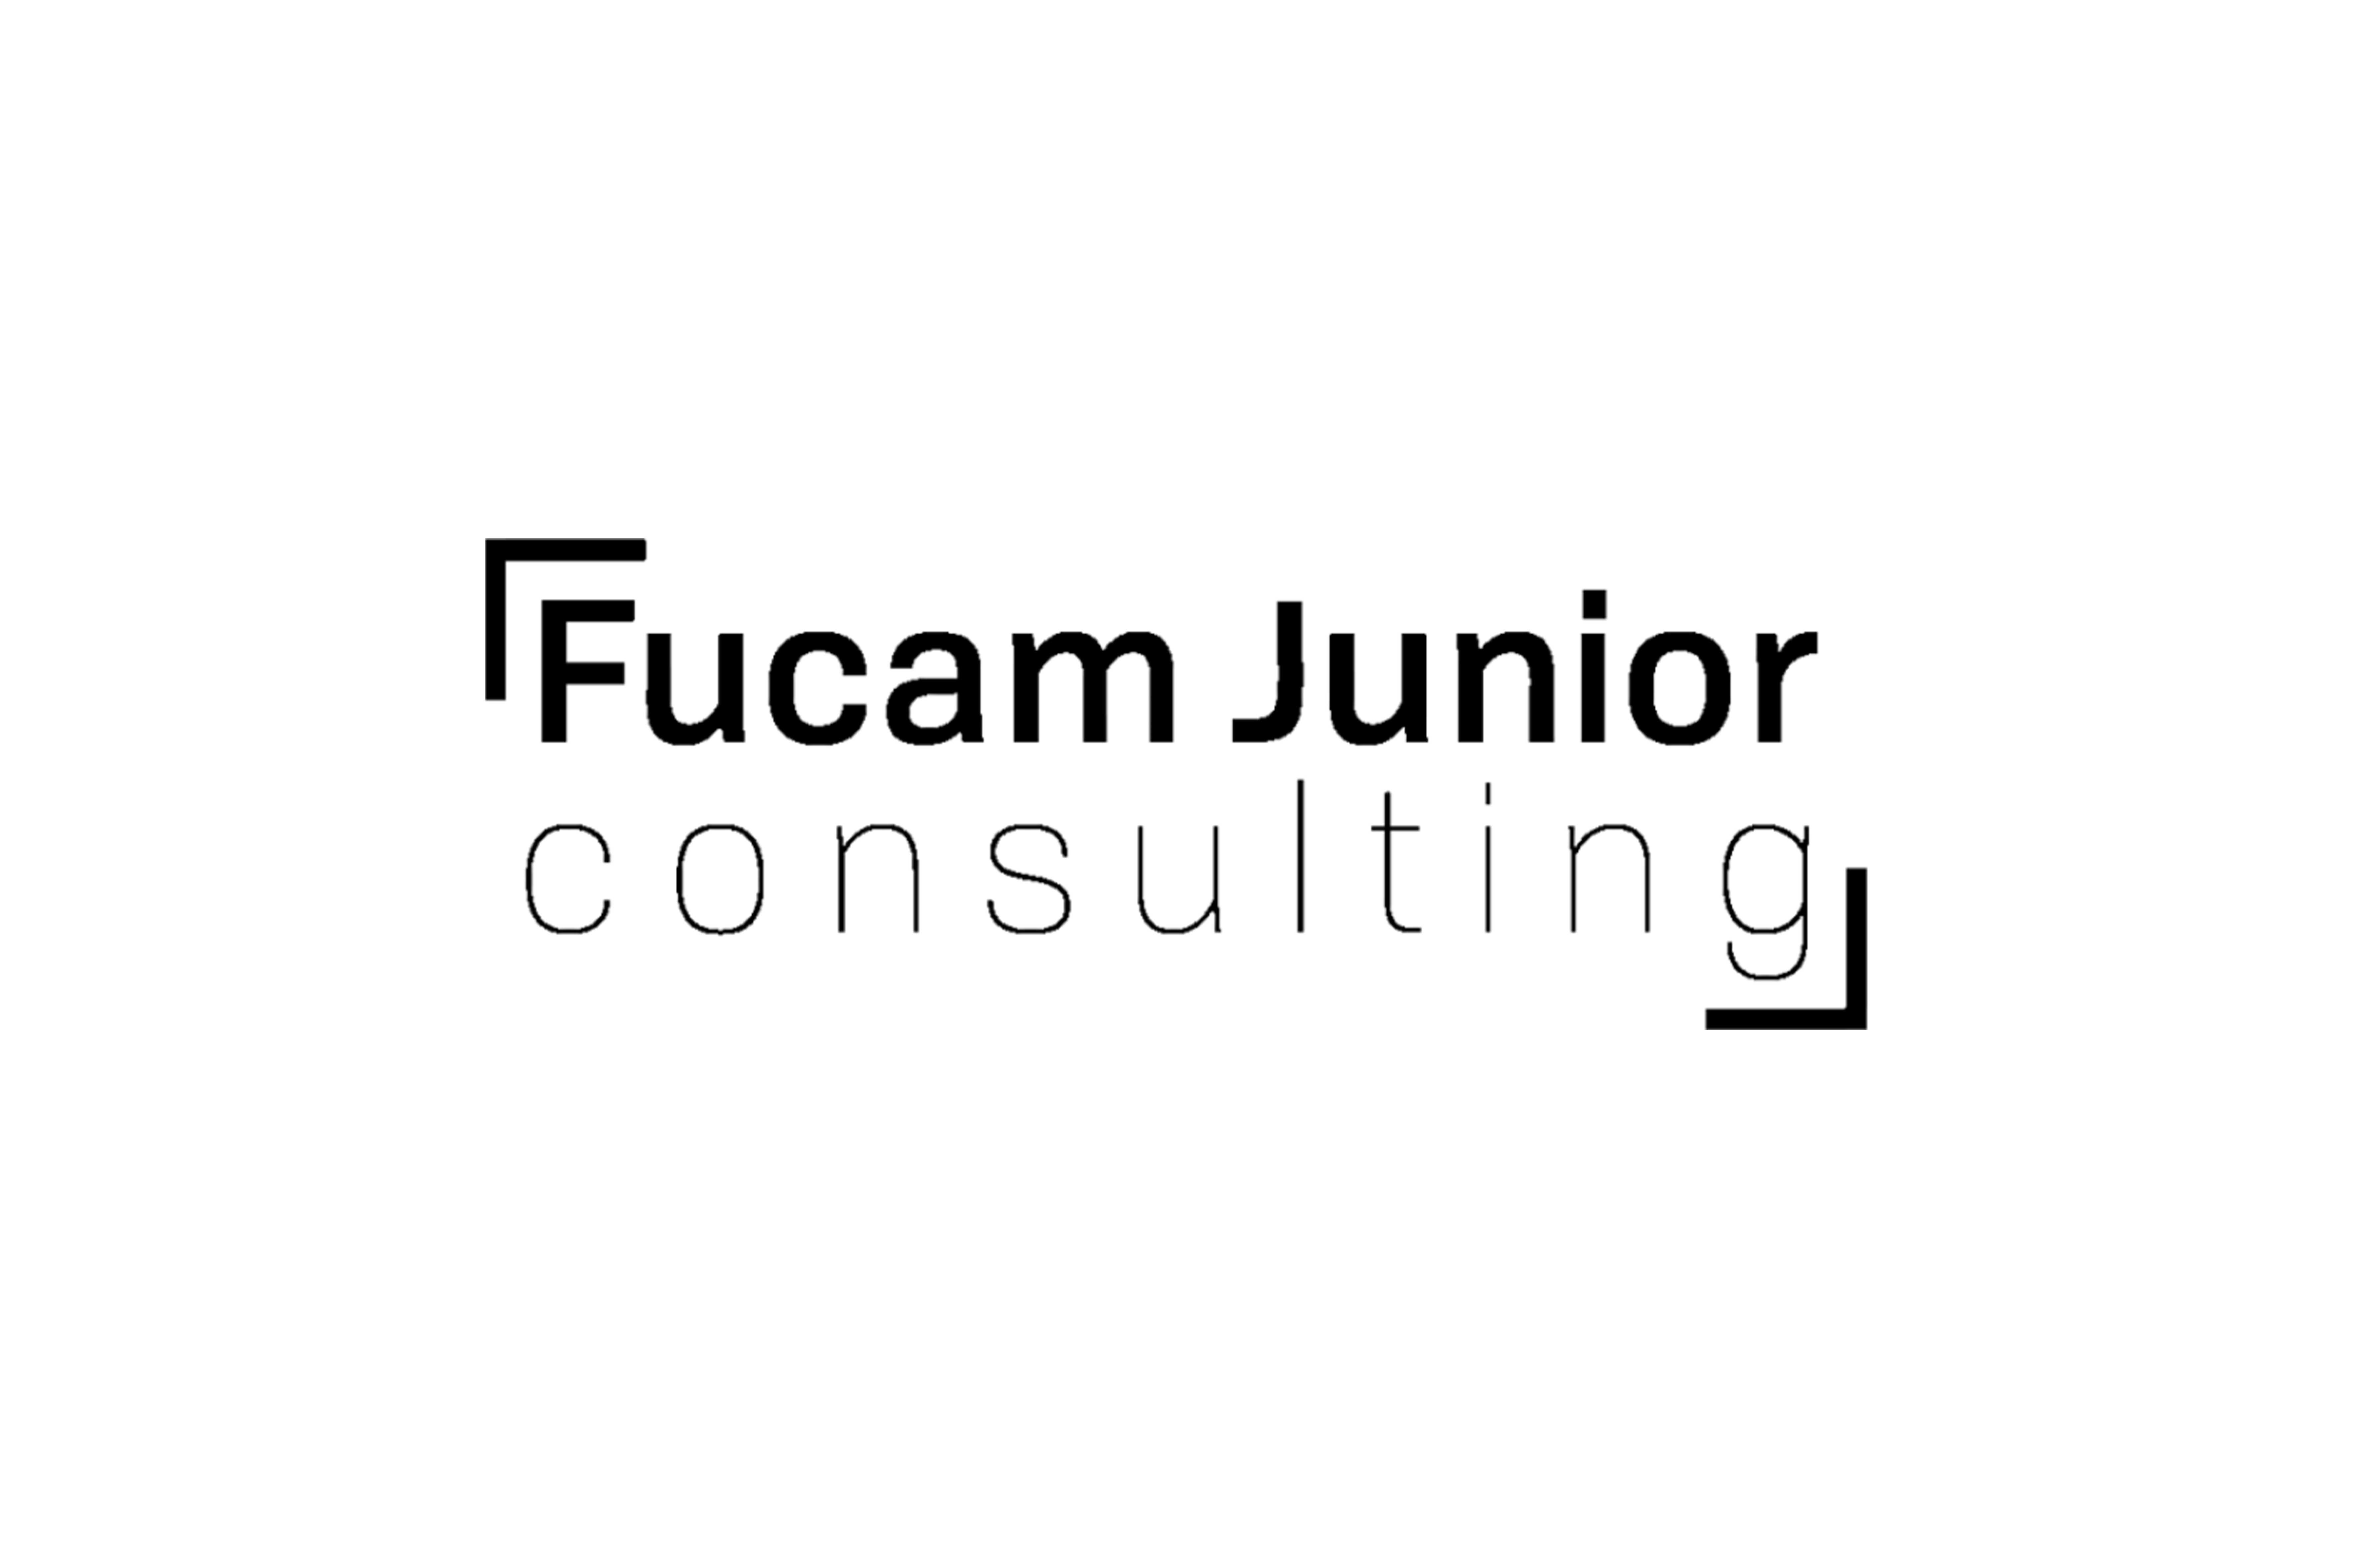 Fucam Junior Consulting